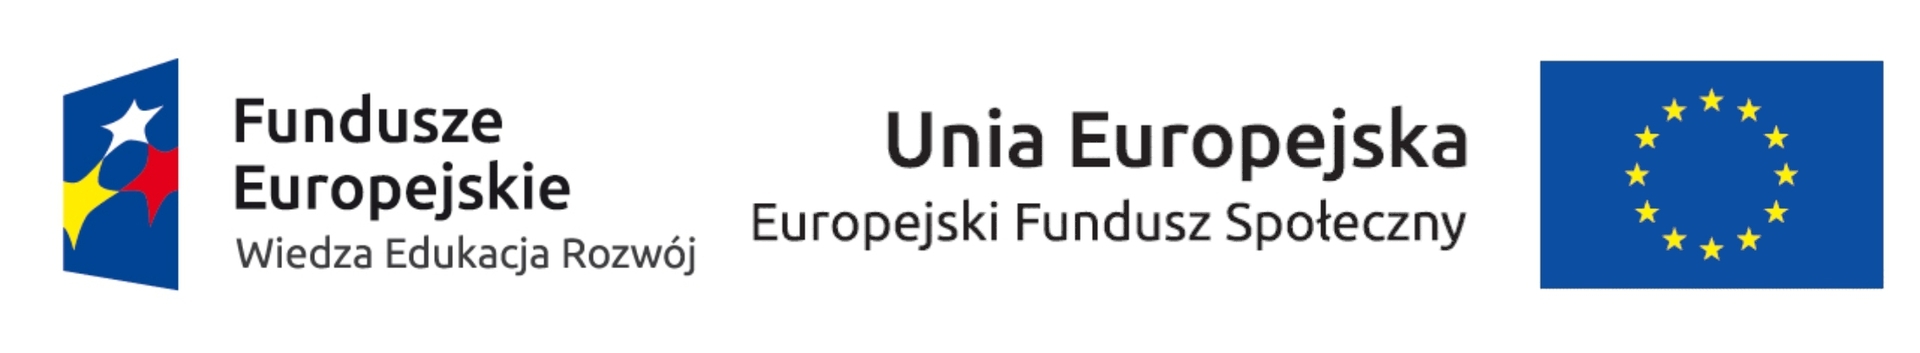 loga UE na wwwJPG